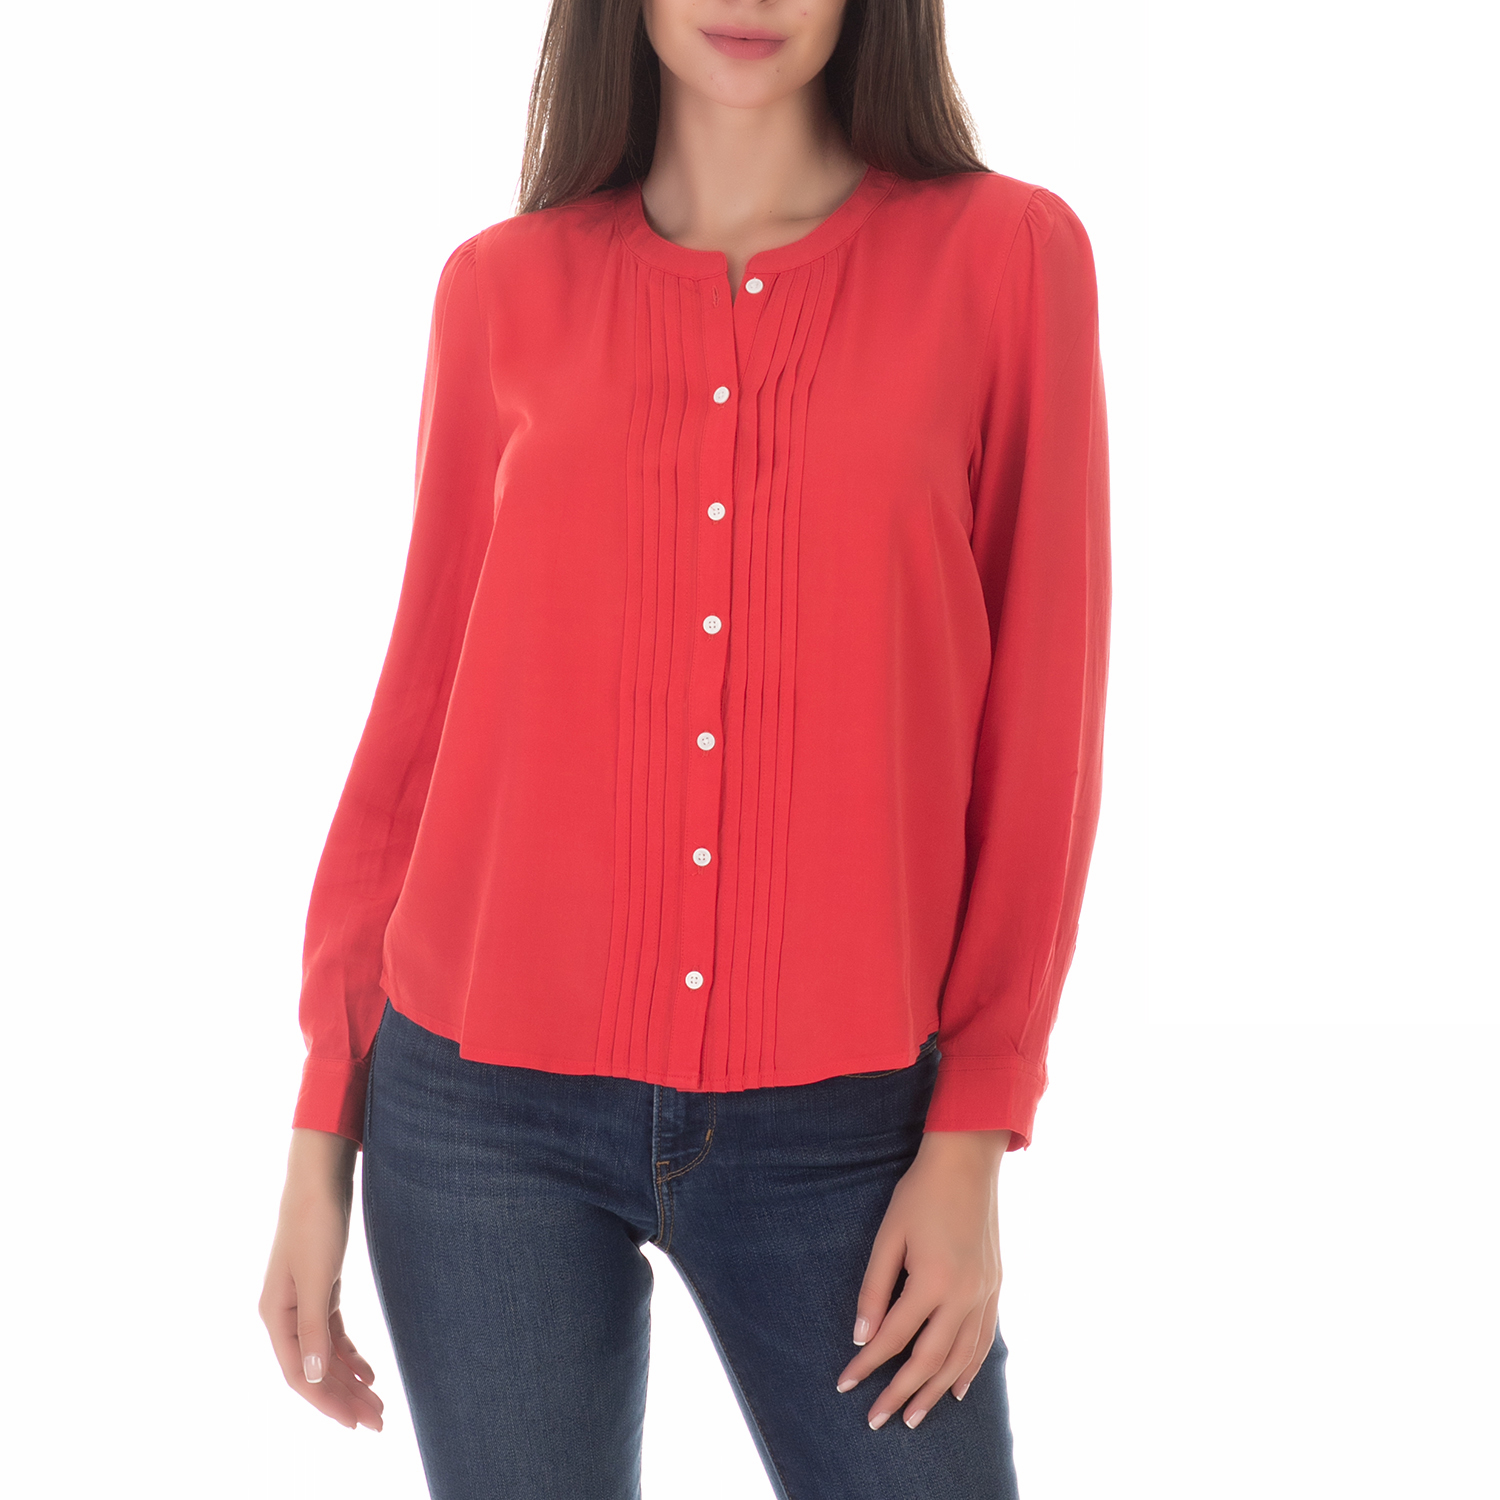 Γυναικεία/Ρούχα/Πουκάμισα/Μακρυμάνικα LEVI'S - Γυναικείο μακρυμάνικο πουκάμισο LEVI'S MAYA TOP POINSETTIA κόκκινο